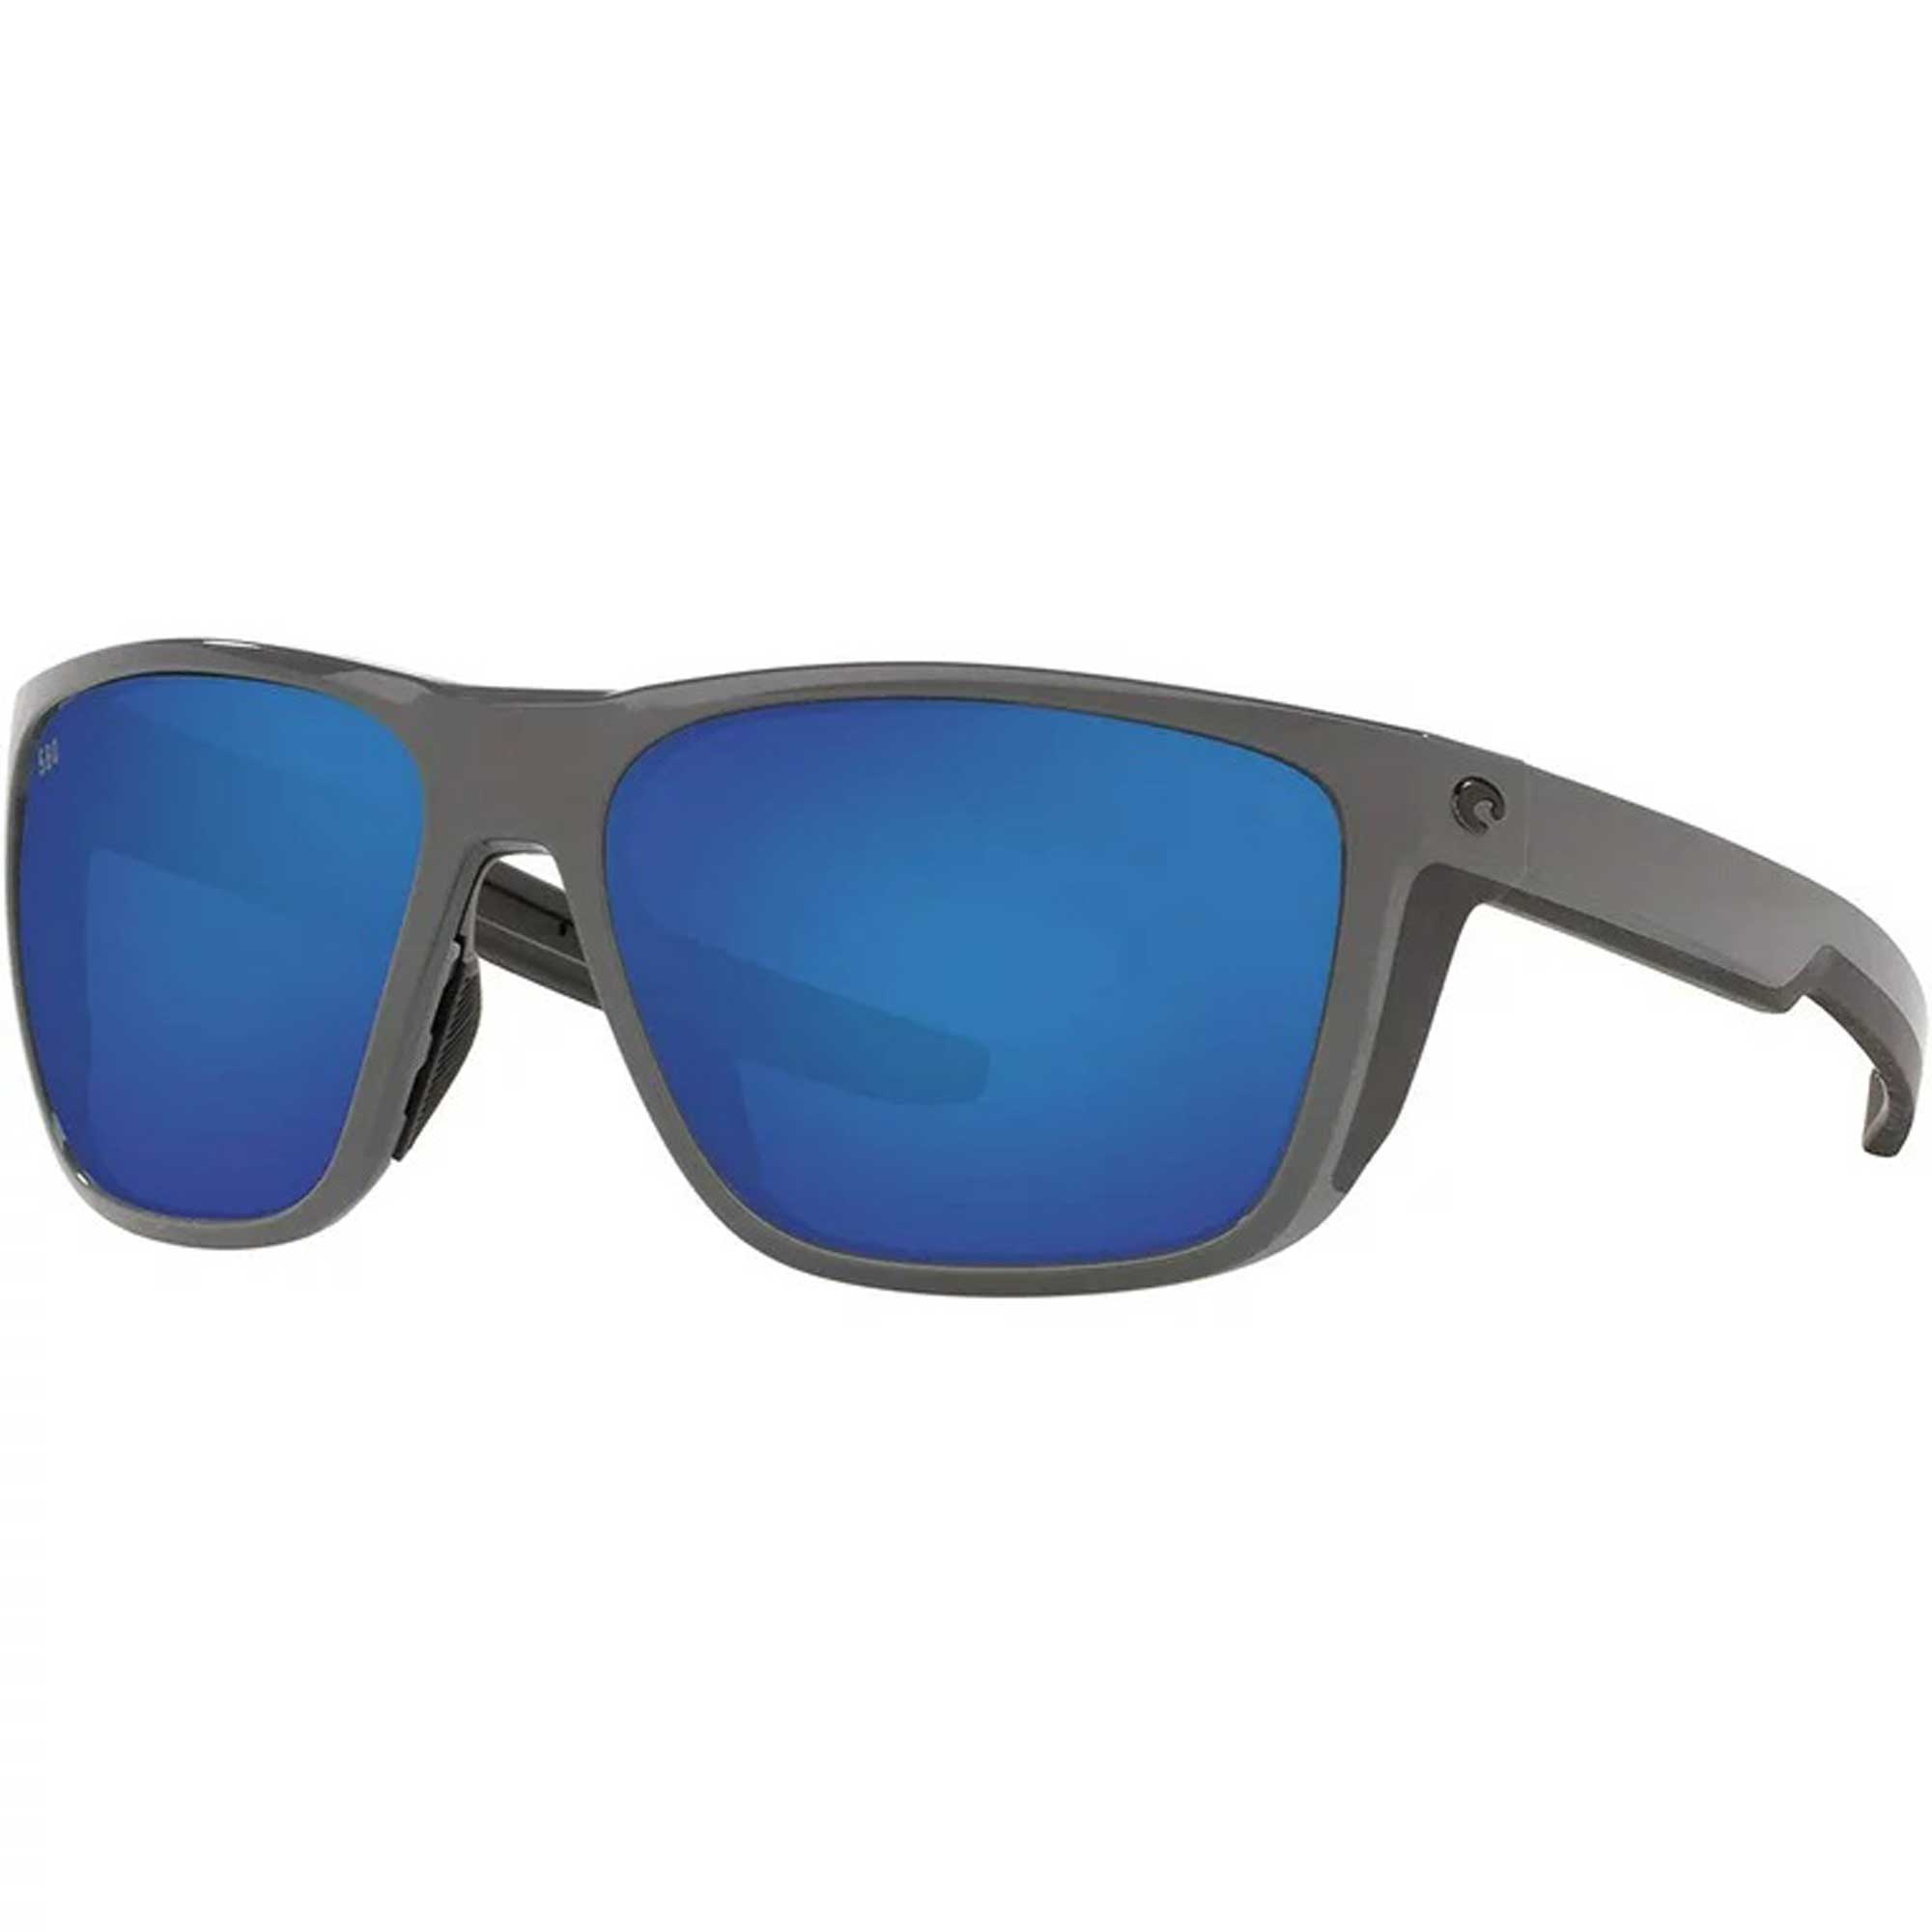 Sunglasses Costa Del Mar 06 S 9002 900233 Ferg 298 Shiny Gray Blue Mirr - image 1 of 3